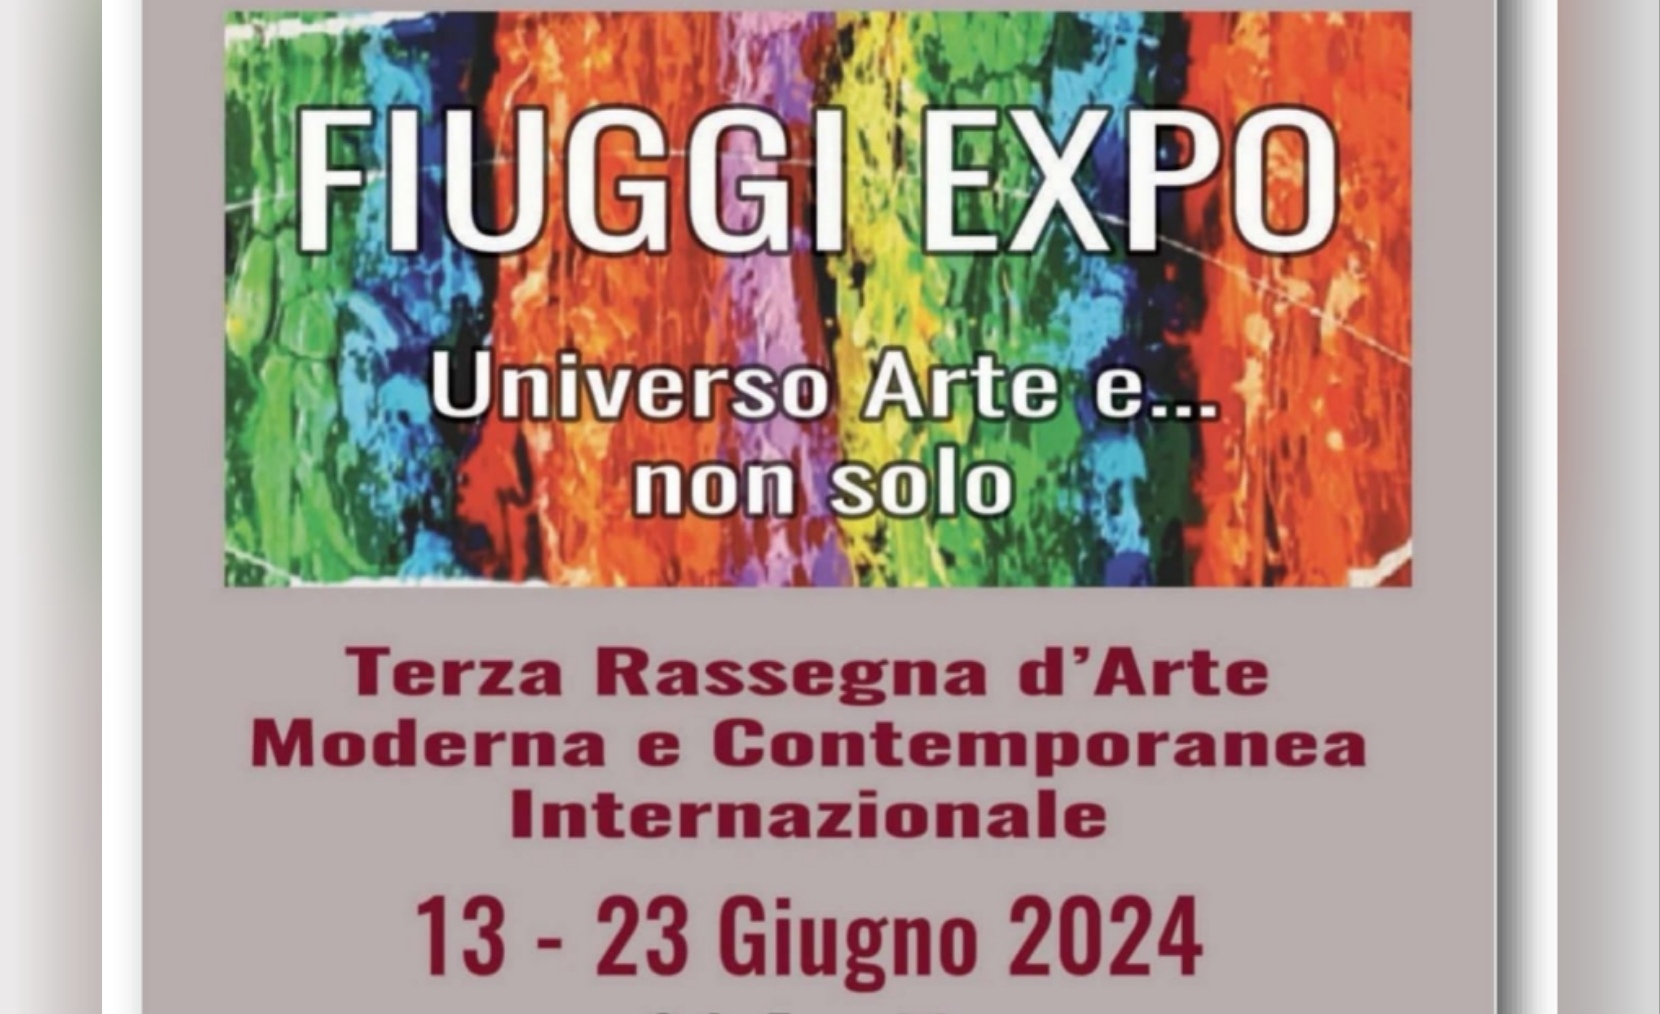 FIUGGI EXPO III EDIZIONE dal 13 al 23 giugno 2024  Il Programma